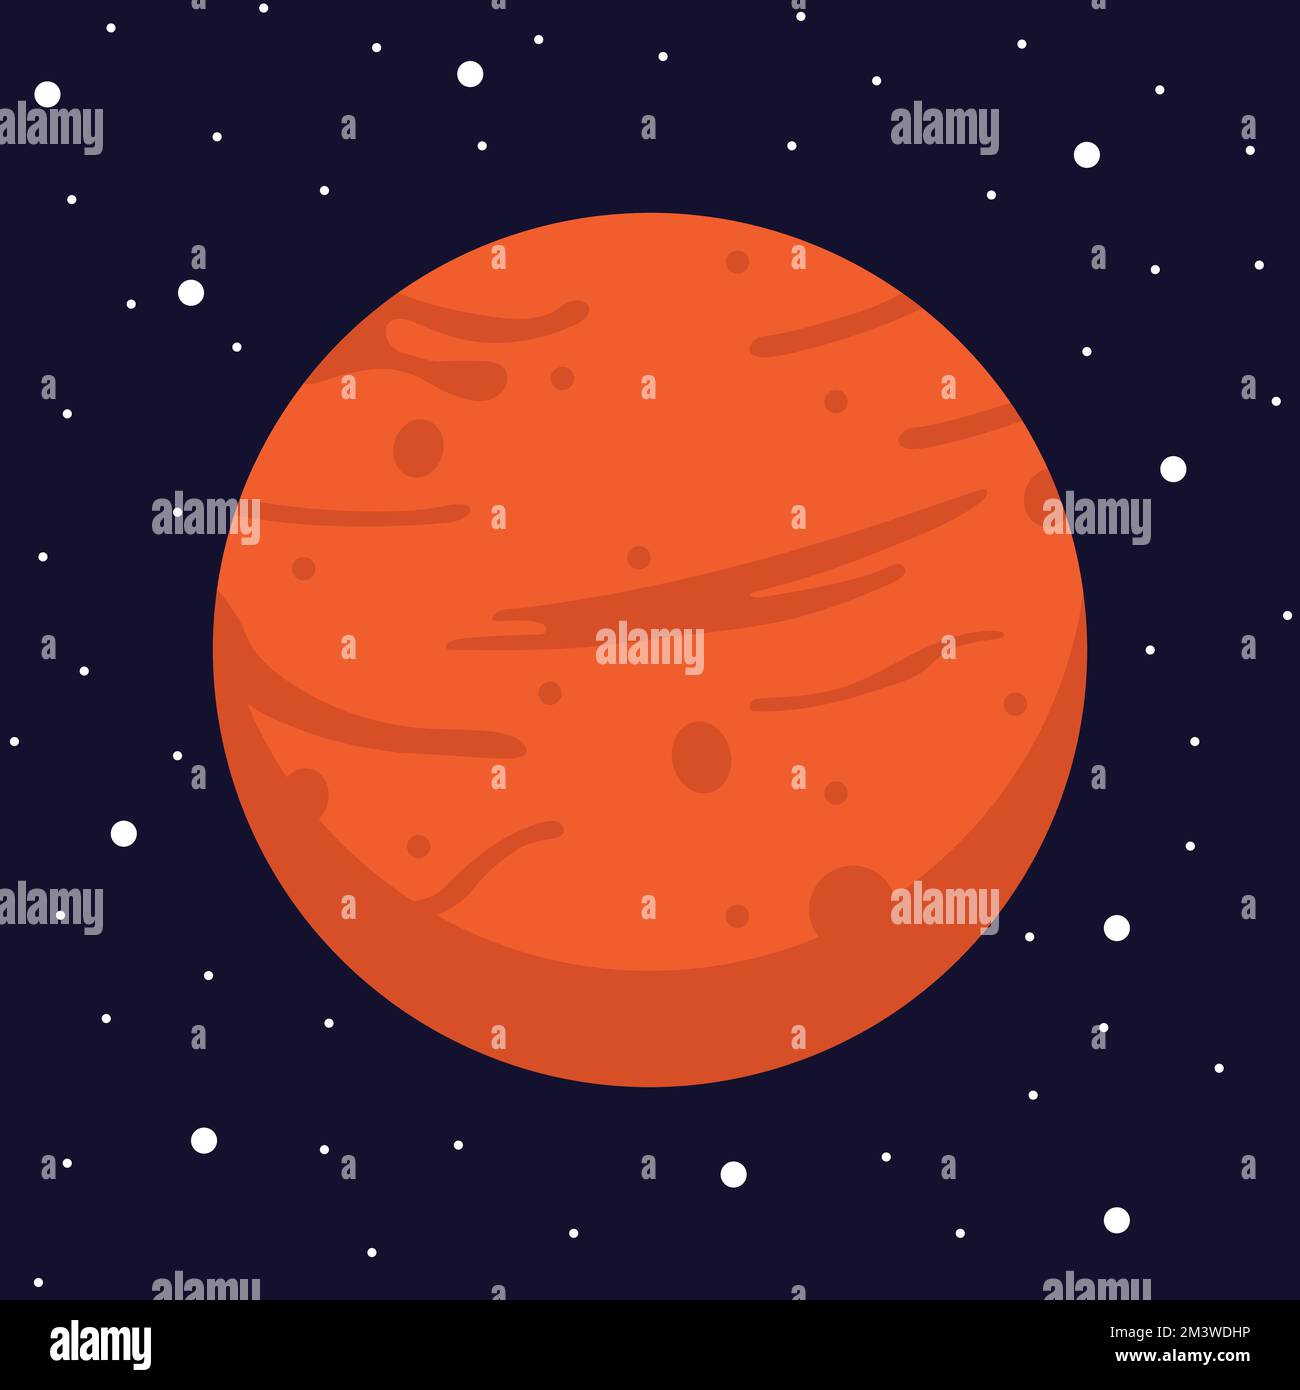 Planeta Rojo Marte en el Espacio Oscuro. Vector, ilustración de dibujos animados del planeta Marte Ilustración del Vector